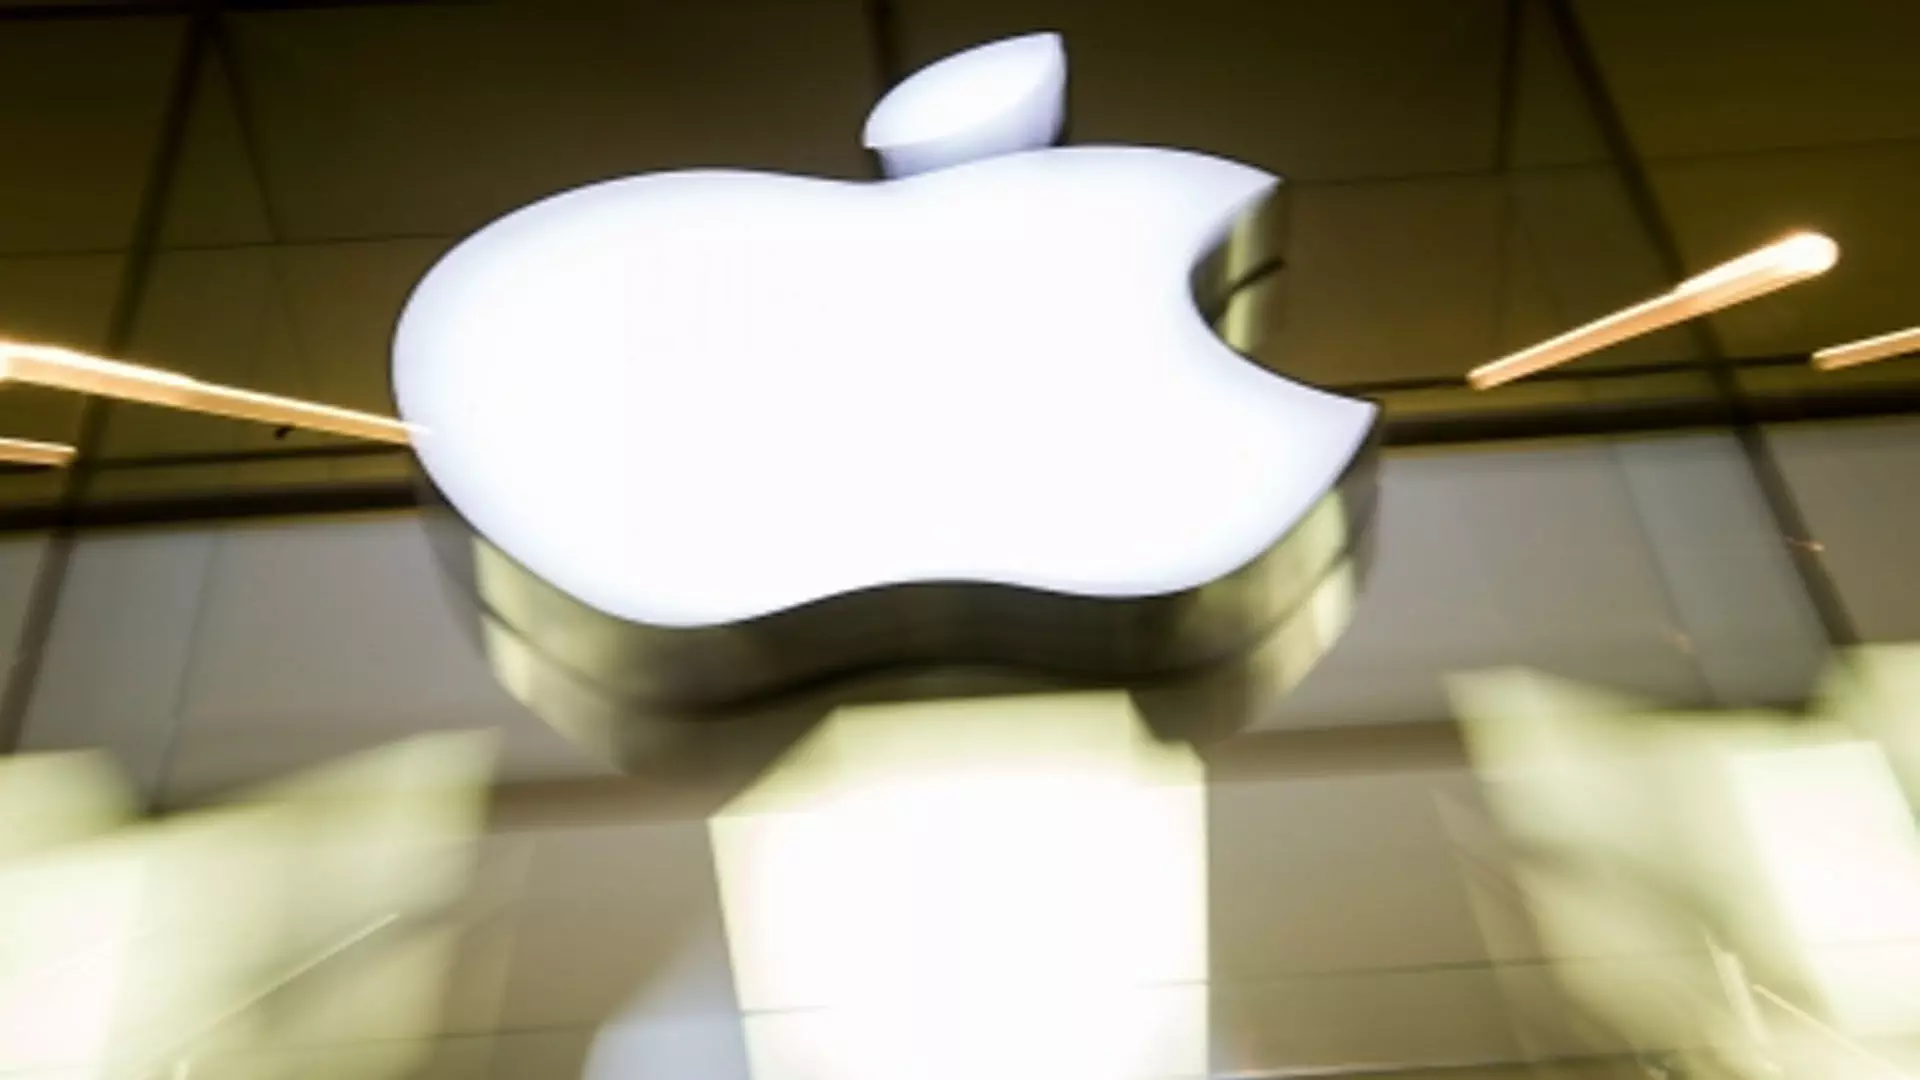 Delhi News: एप्पल ने 98 देशों के आईफोन उपयोगकर्ताओं को नया स्पाइवेयर खतरा अलर्ट भेजा